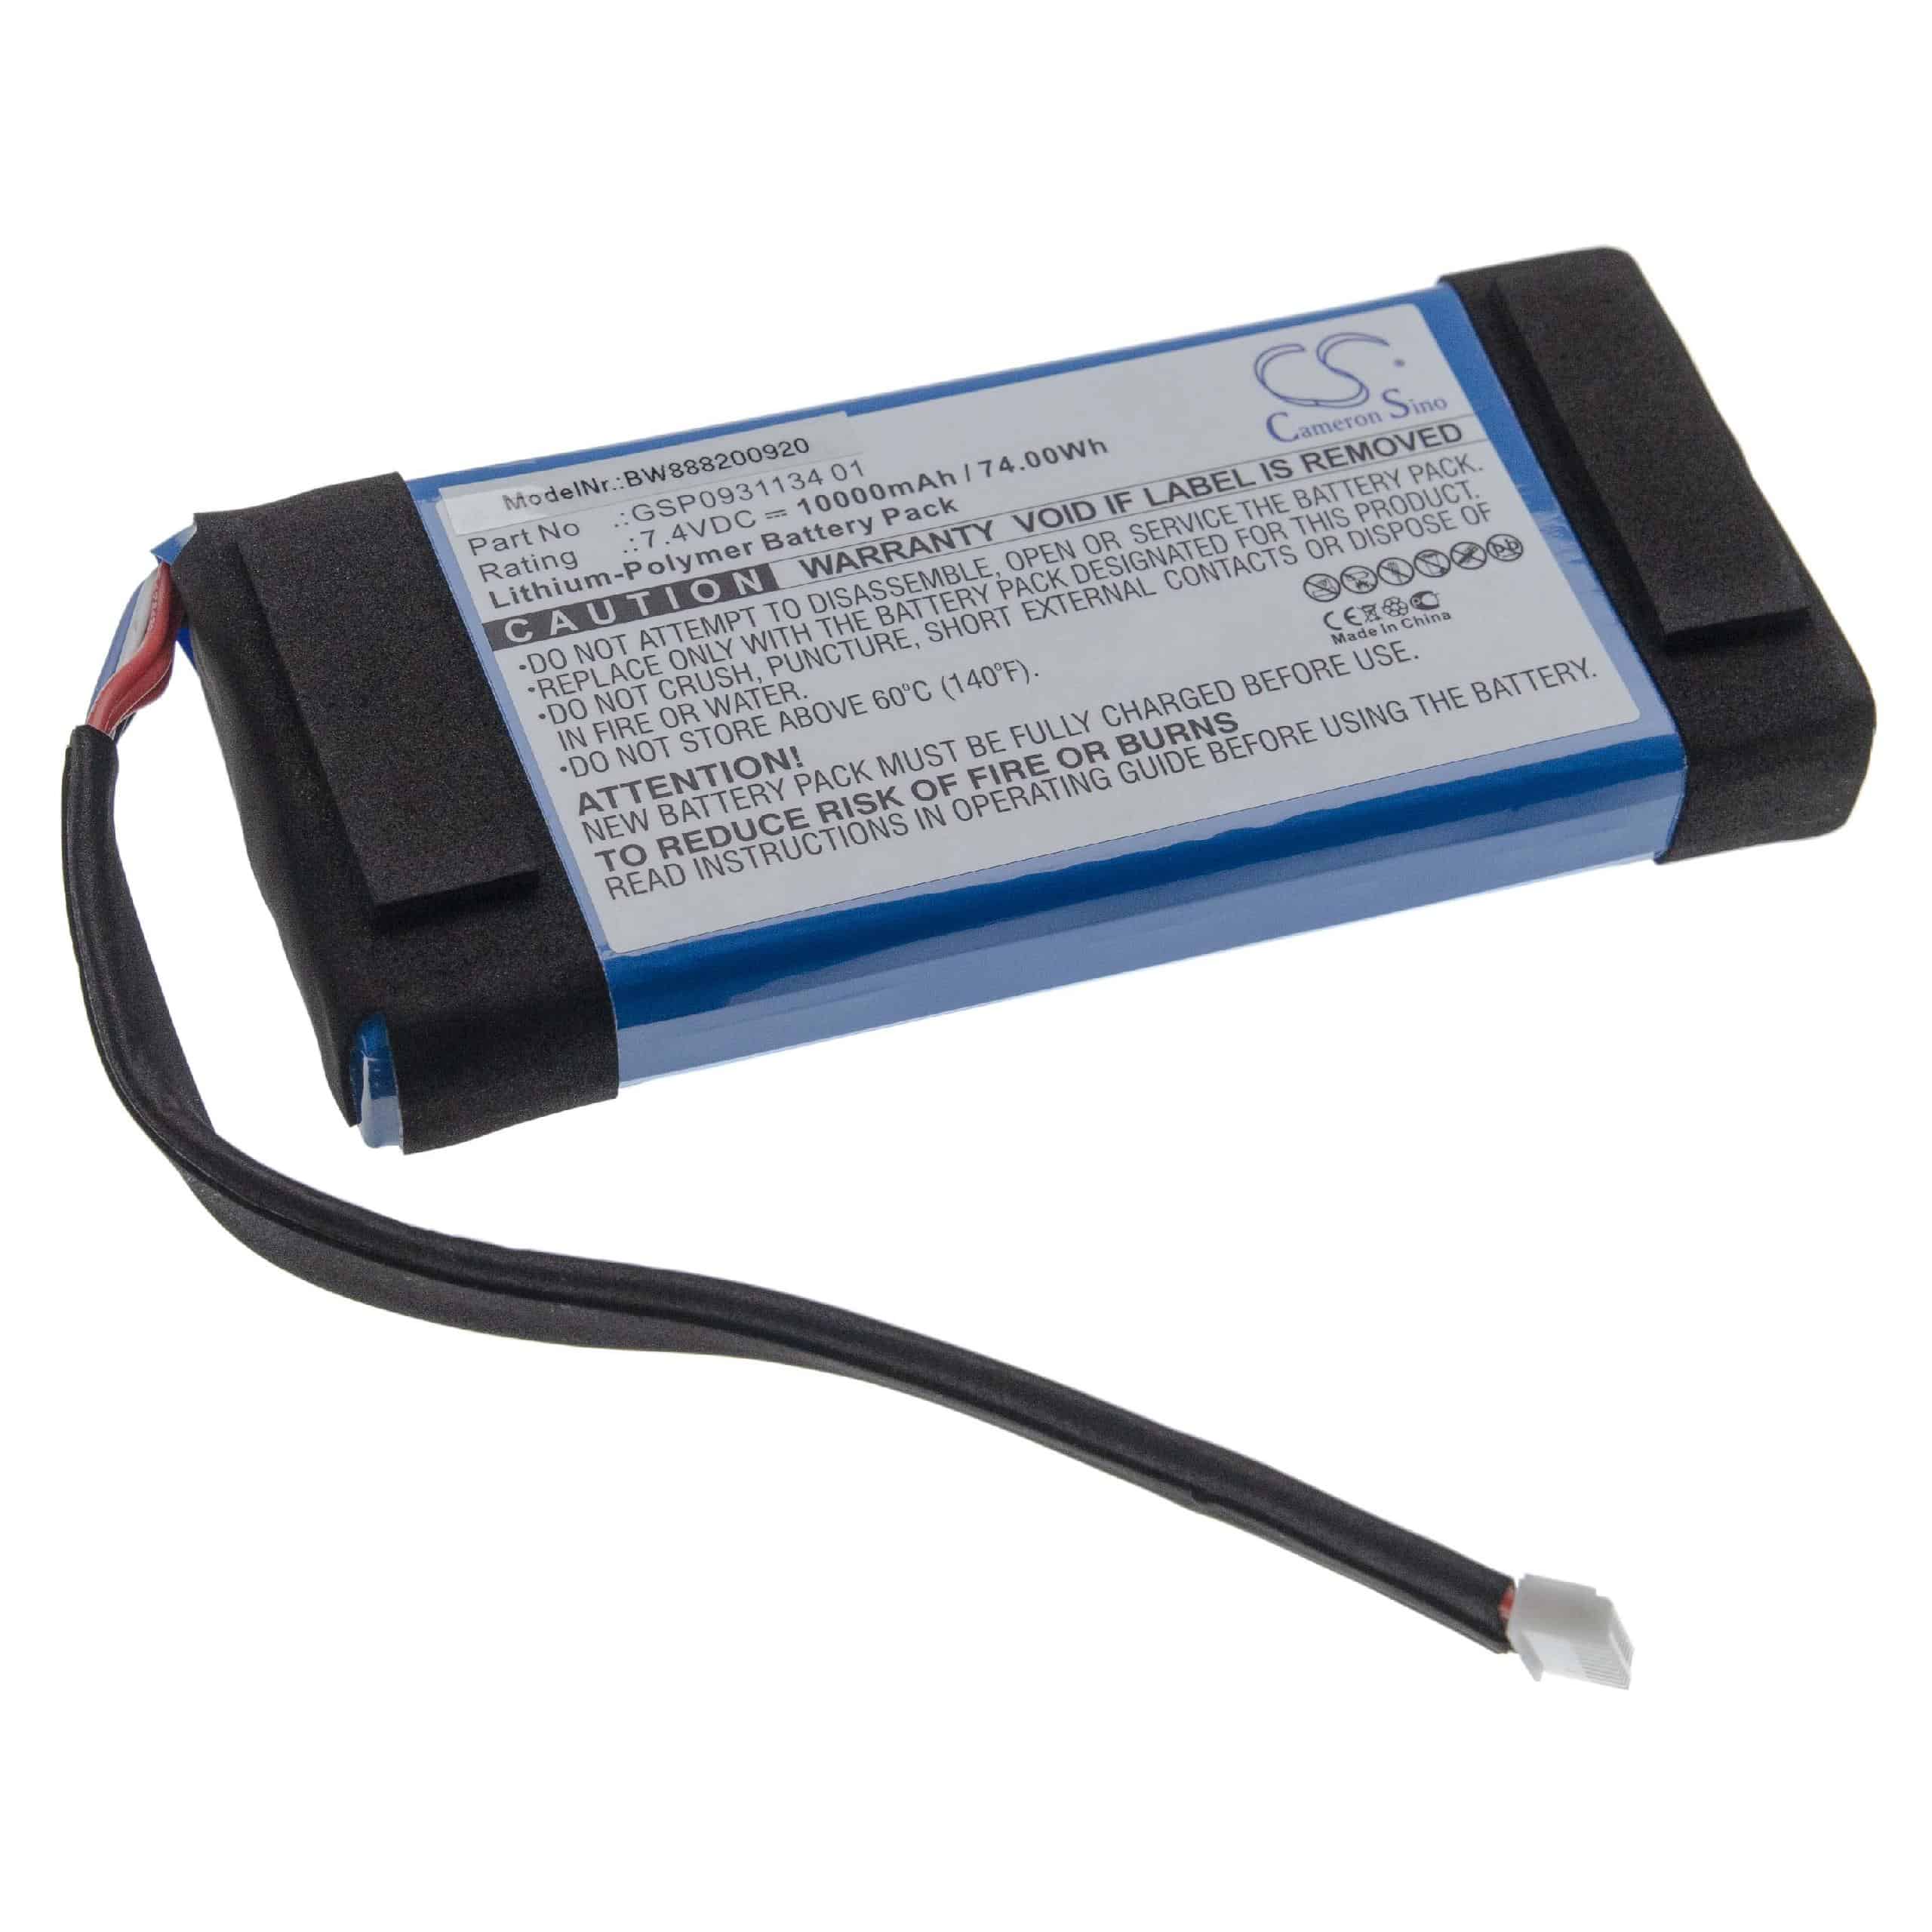  Battery replaces JBL GSP0931134 01 for JBLLoudspeaker - Li-polymer 10000 mAh